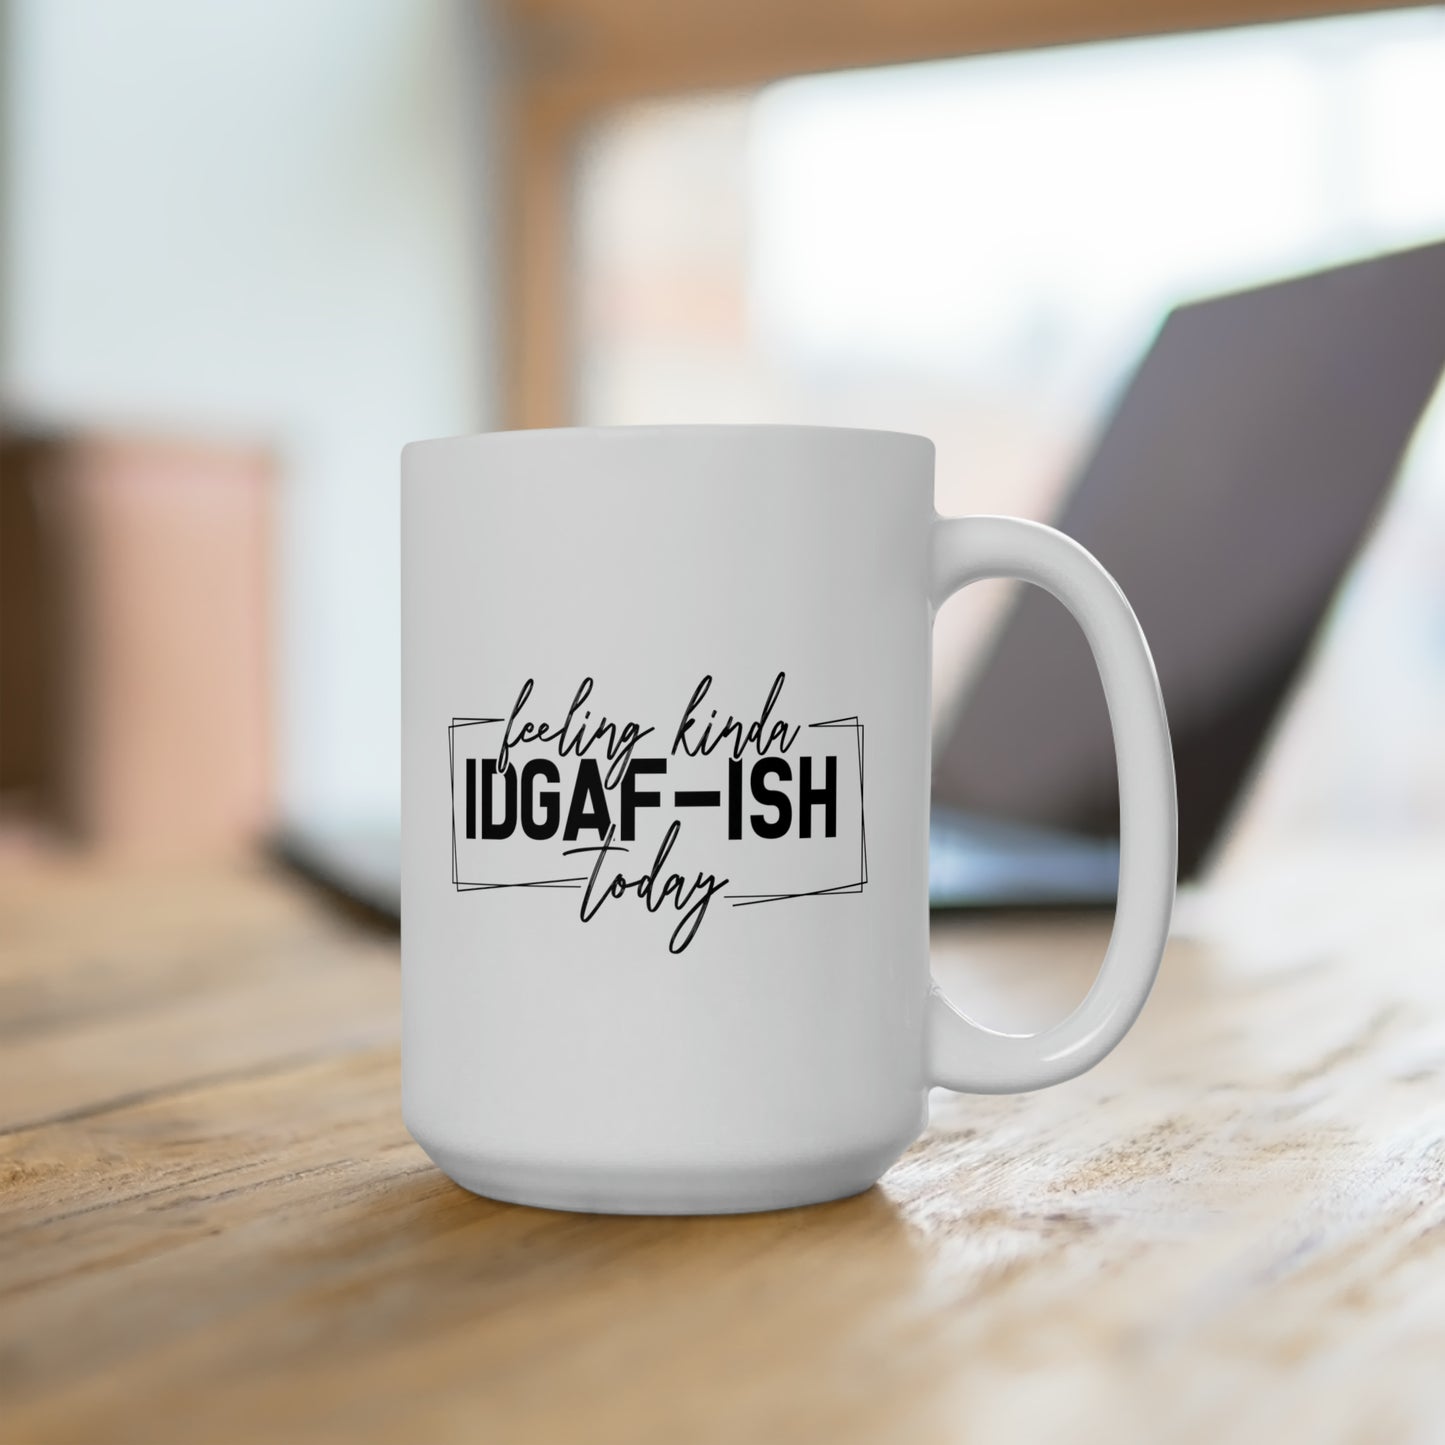 IDGAF Mug For Sarcastic Coffee Mug For Don't Care Cup